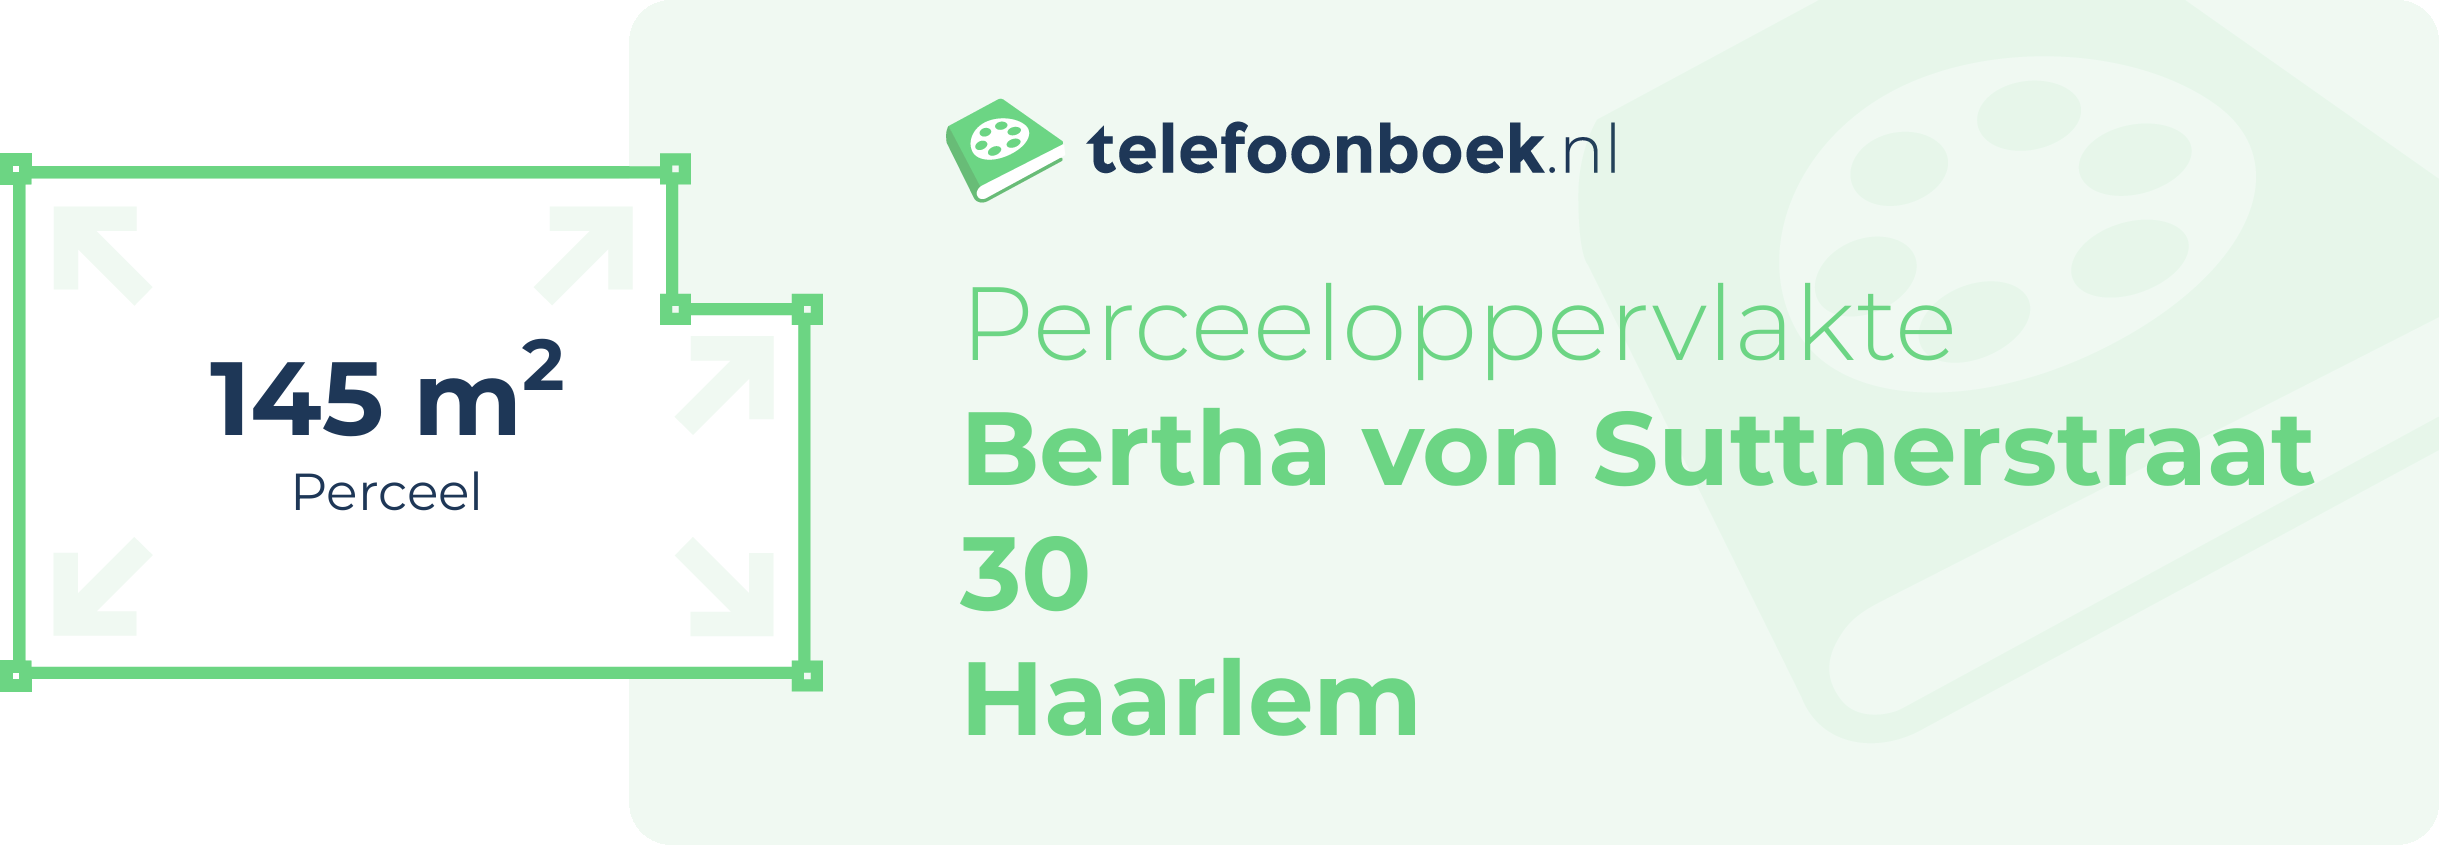 Perceeloppervlakte Bertha Von Suttnerstraat 30 Haarlem